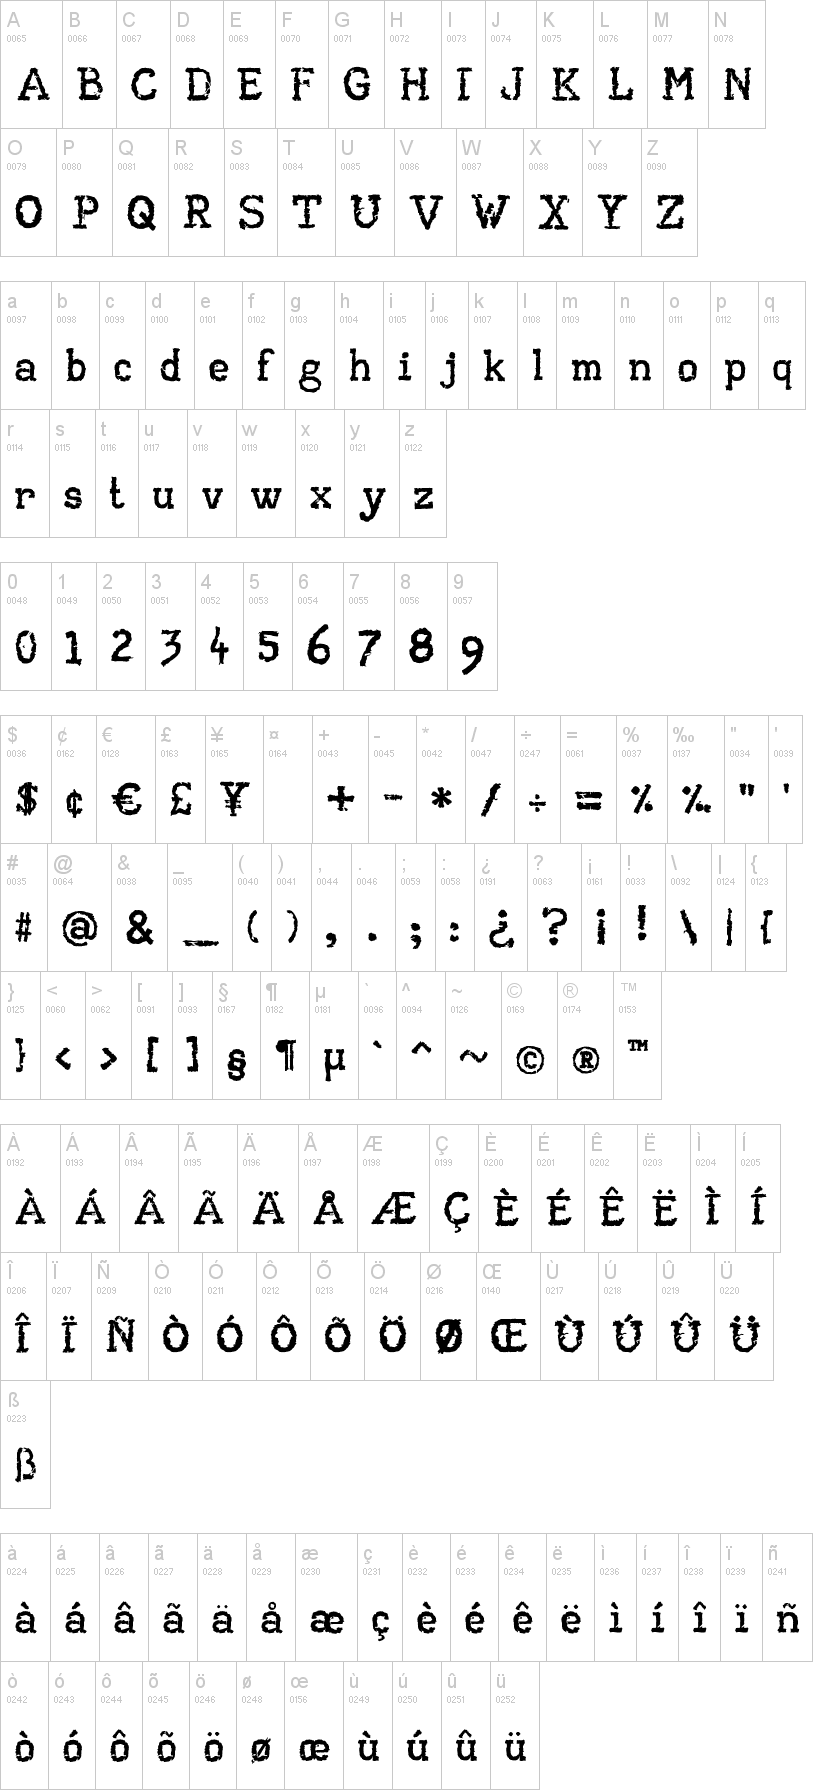 american typewriter font type kit